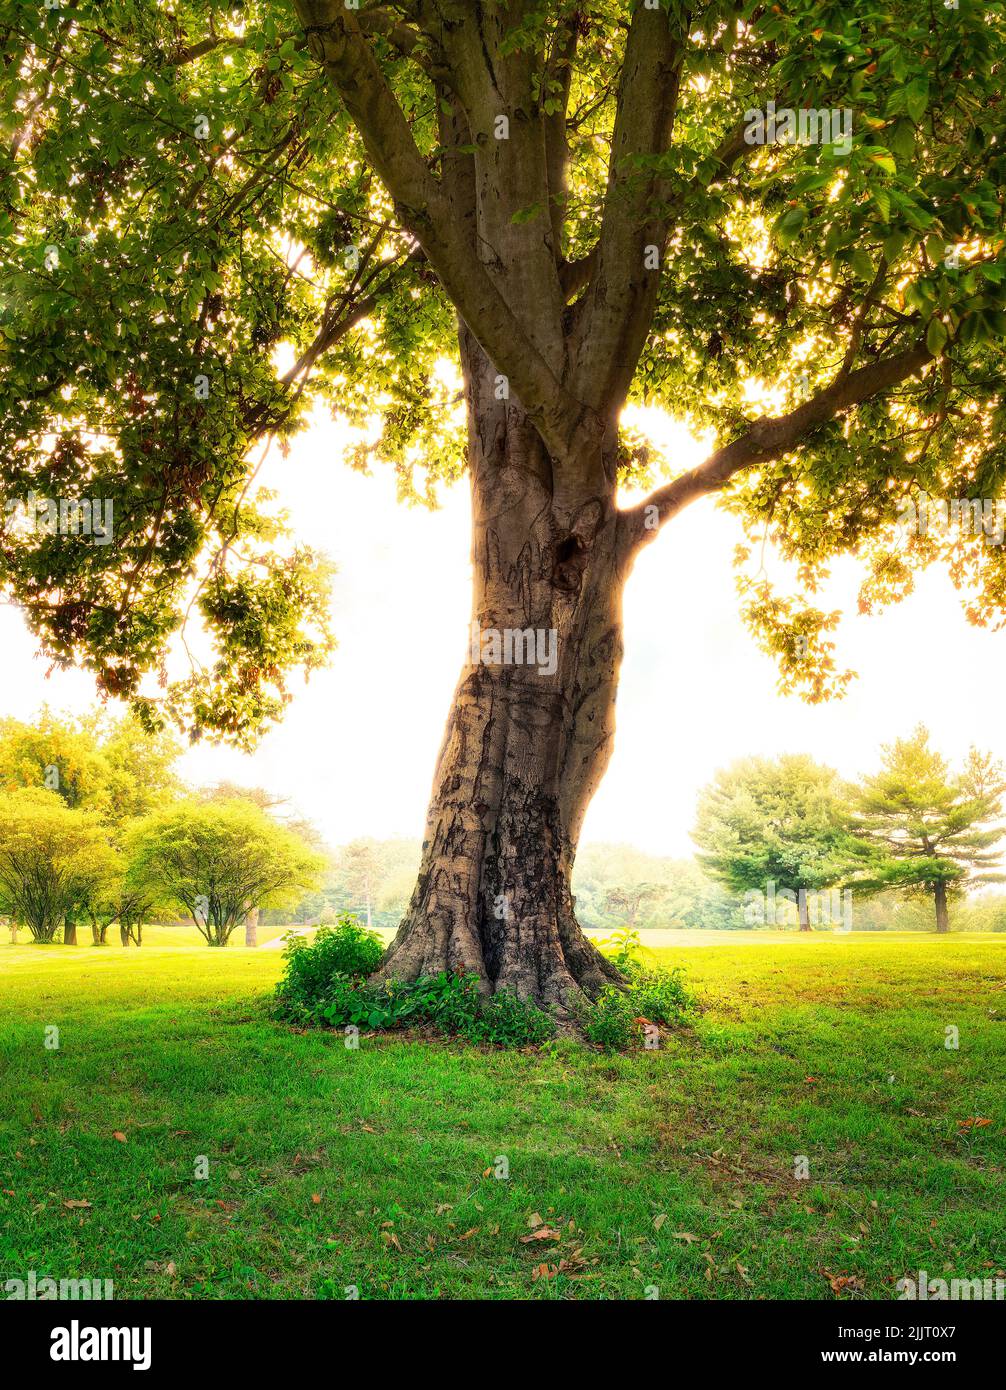 Eine schöne Aufnahme eines riesigen Baumes an einem sonnigen Tag Stockfoto